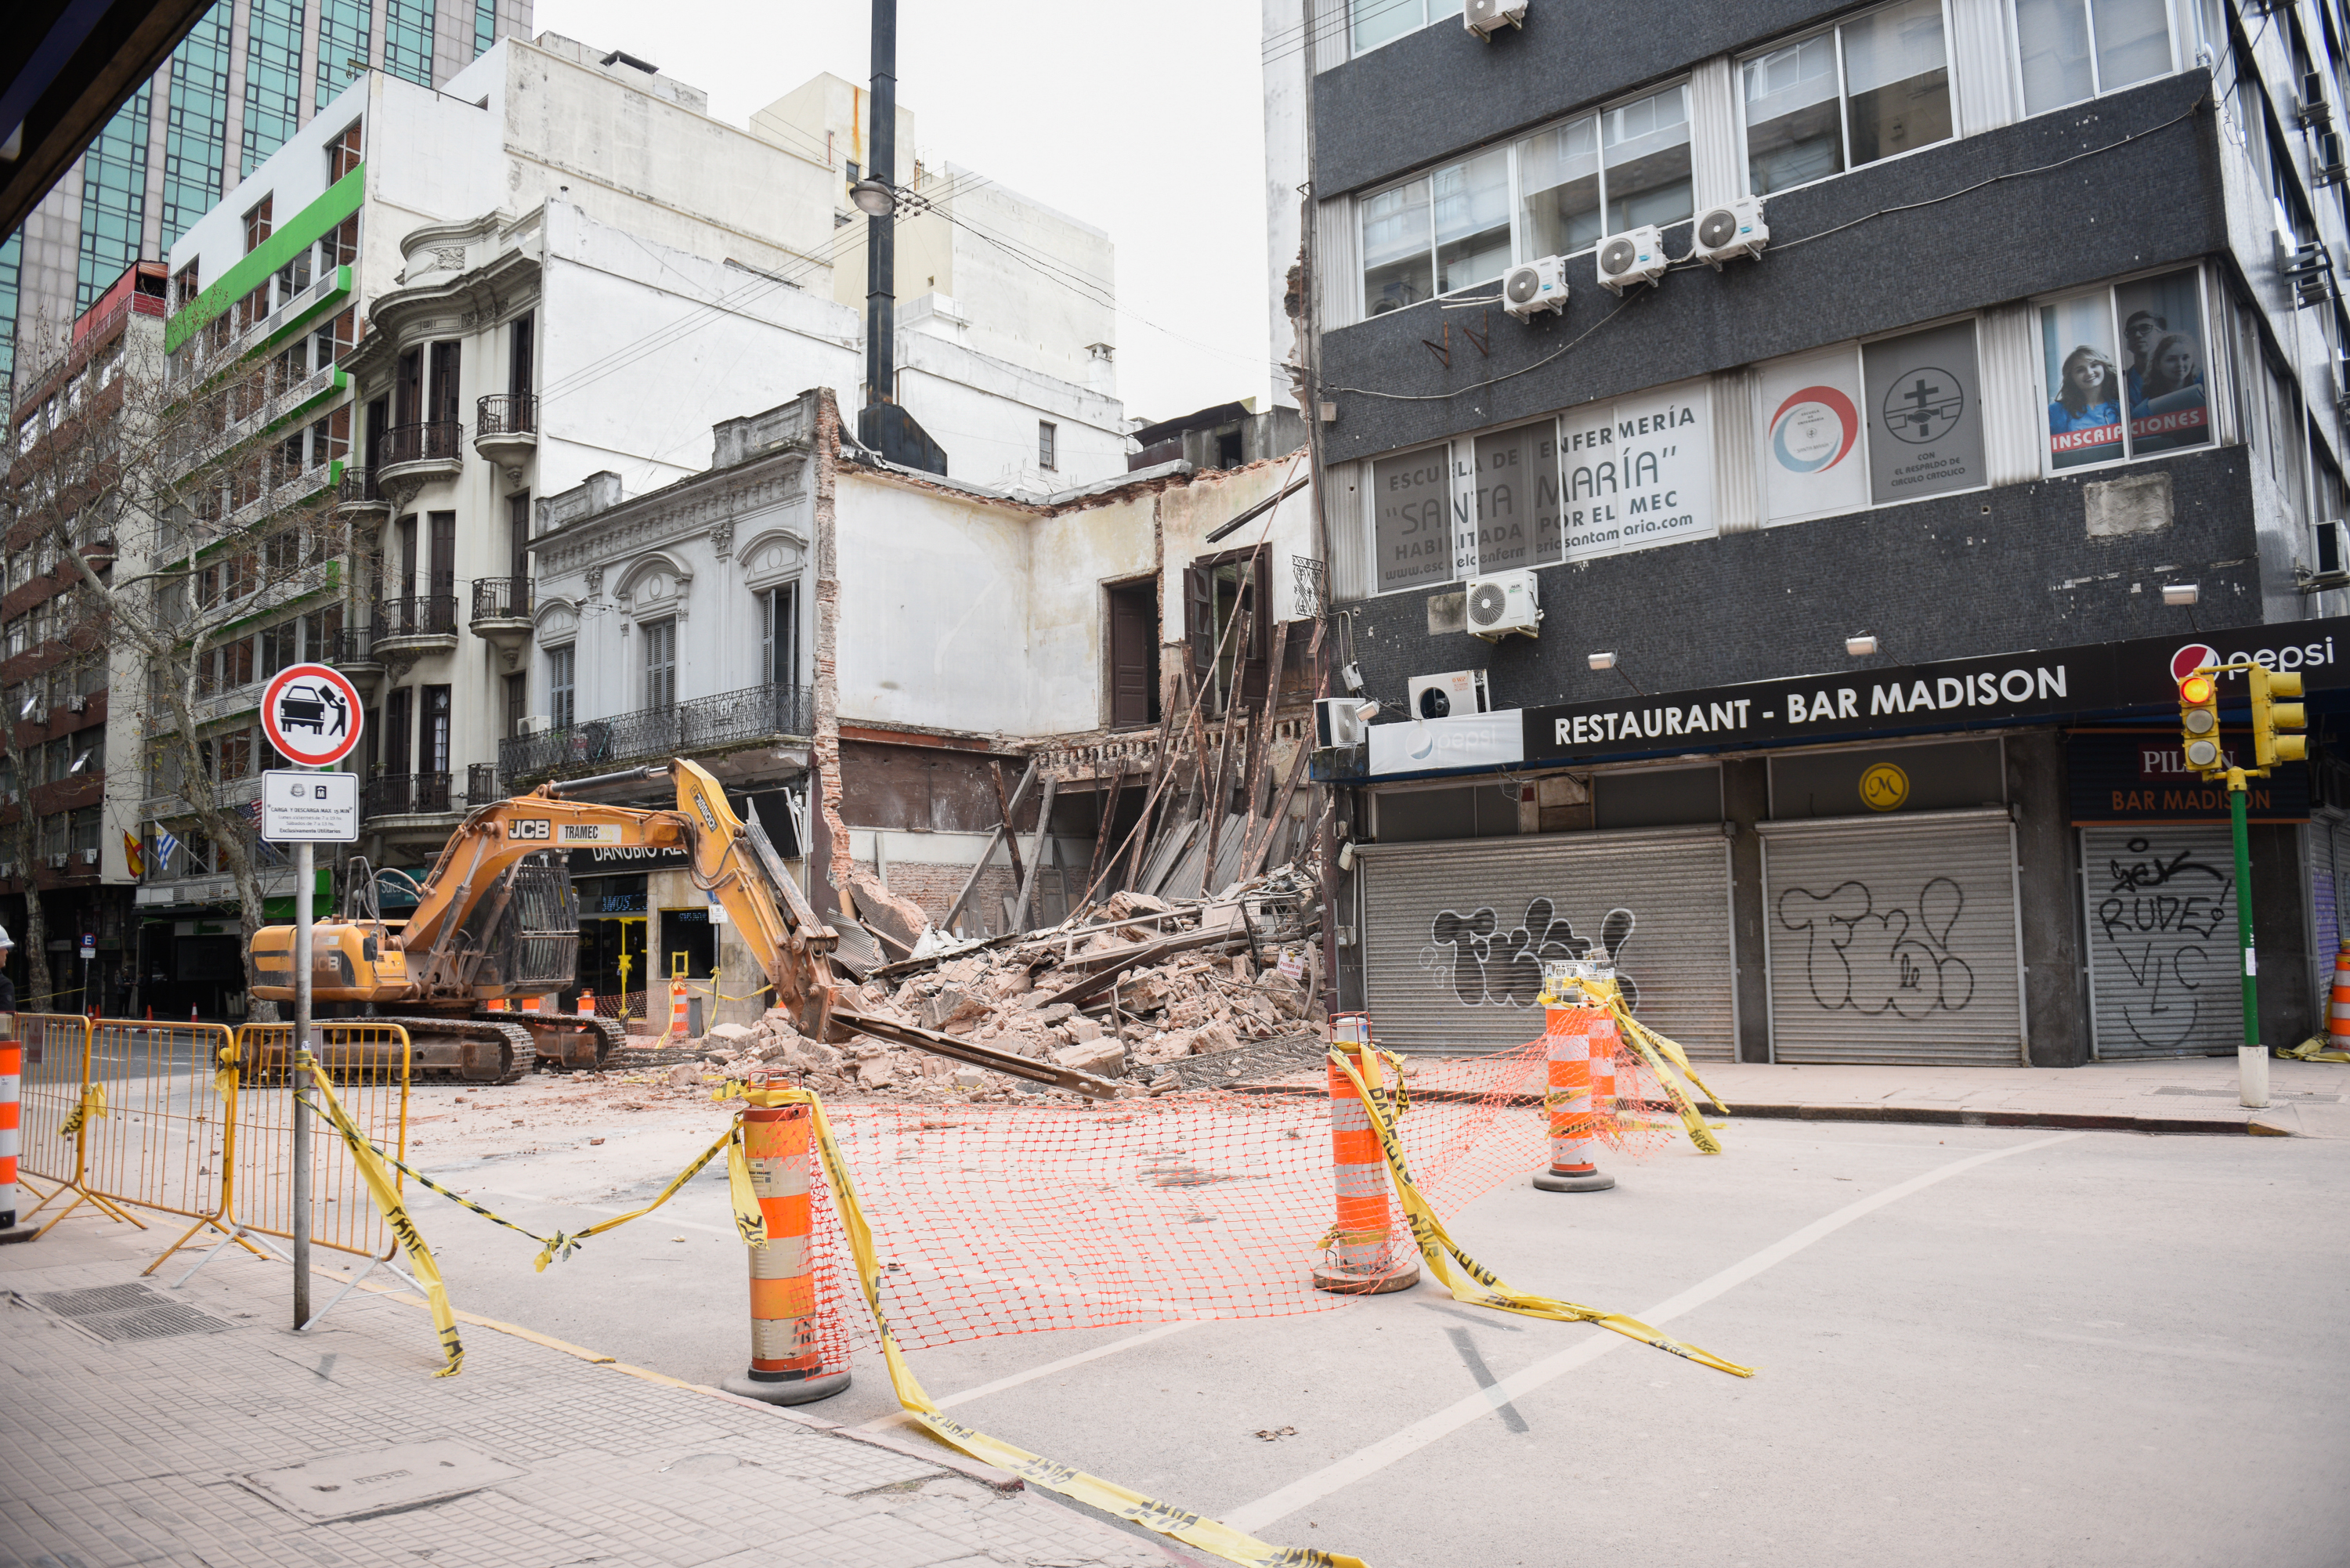 Demolición de casa en la calle Colonia esquina Andes 